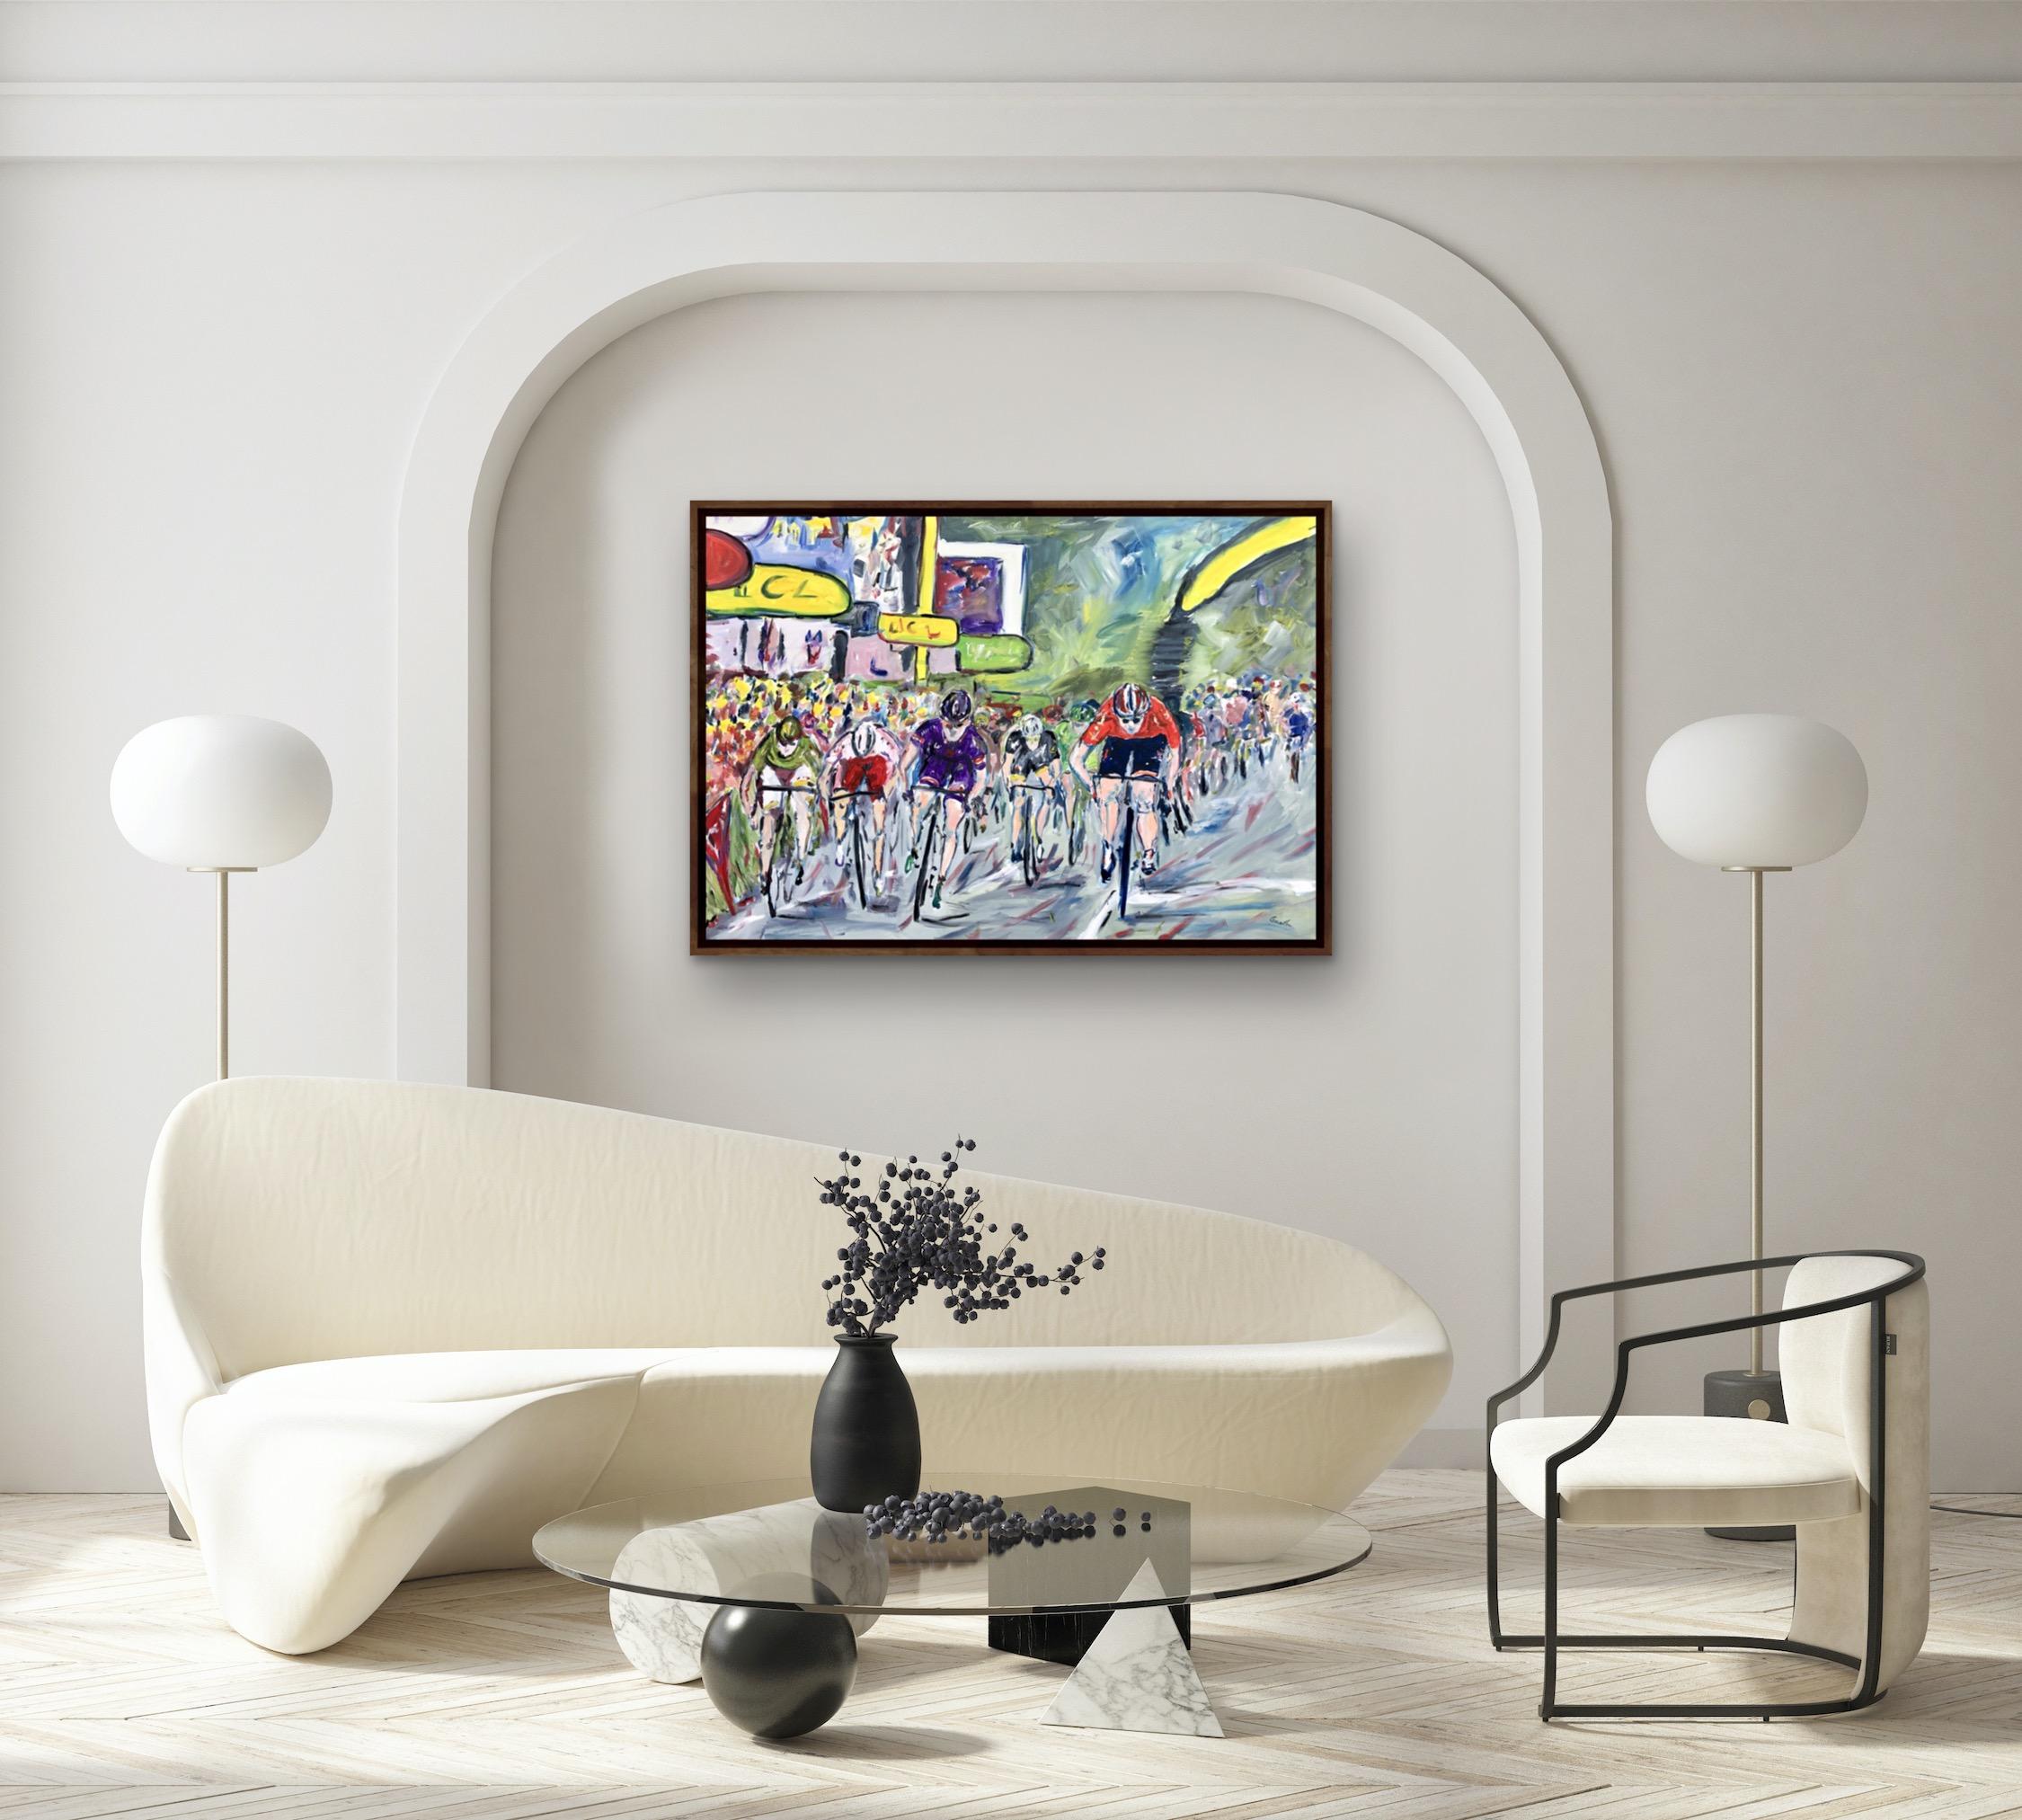 The Final Sprint- Tour de France Stage 15 2015 est une peinture originale de Garth Bayley cycling artwork, sportive, Tour de France,
Cette peinture a été réalisée à partir d'une esquisse. J'ai créé un croquis par jour pour le Tour de France et